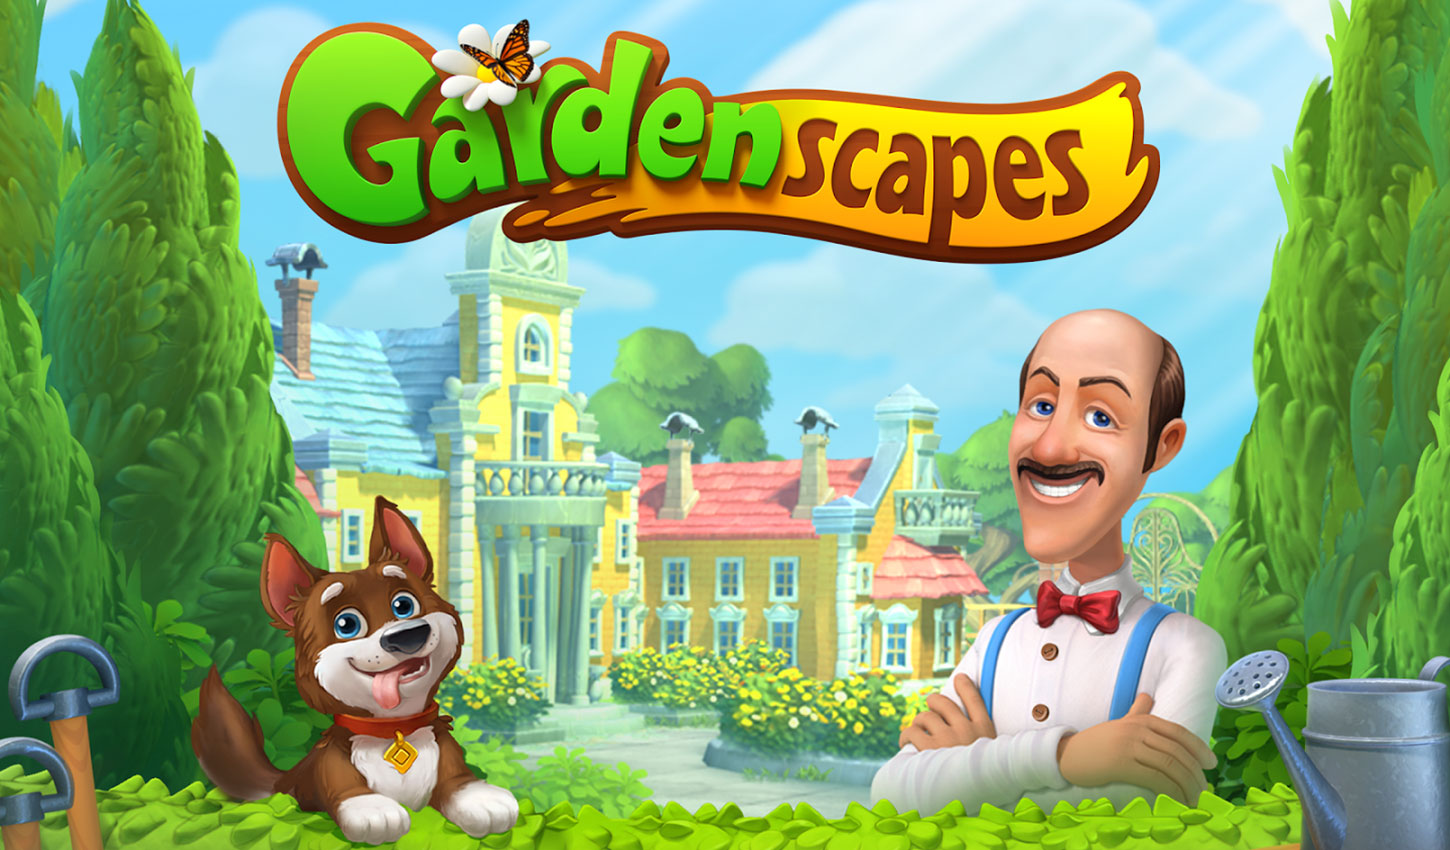 Gardenscapes – Game giải đố của Playrix đạt nửa triệu lượt tải trong 1 tháng